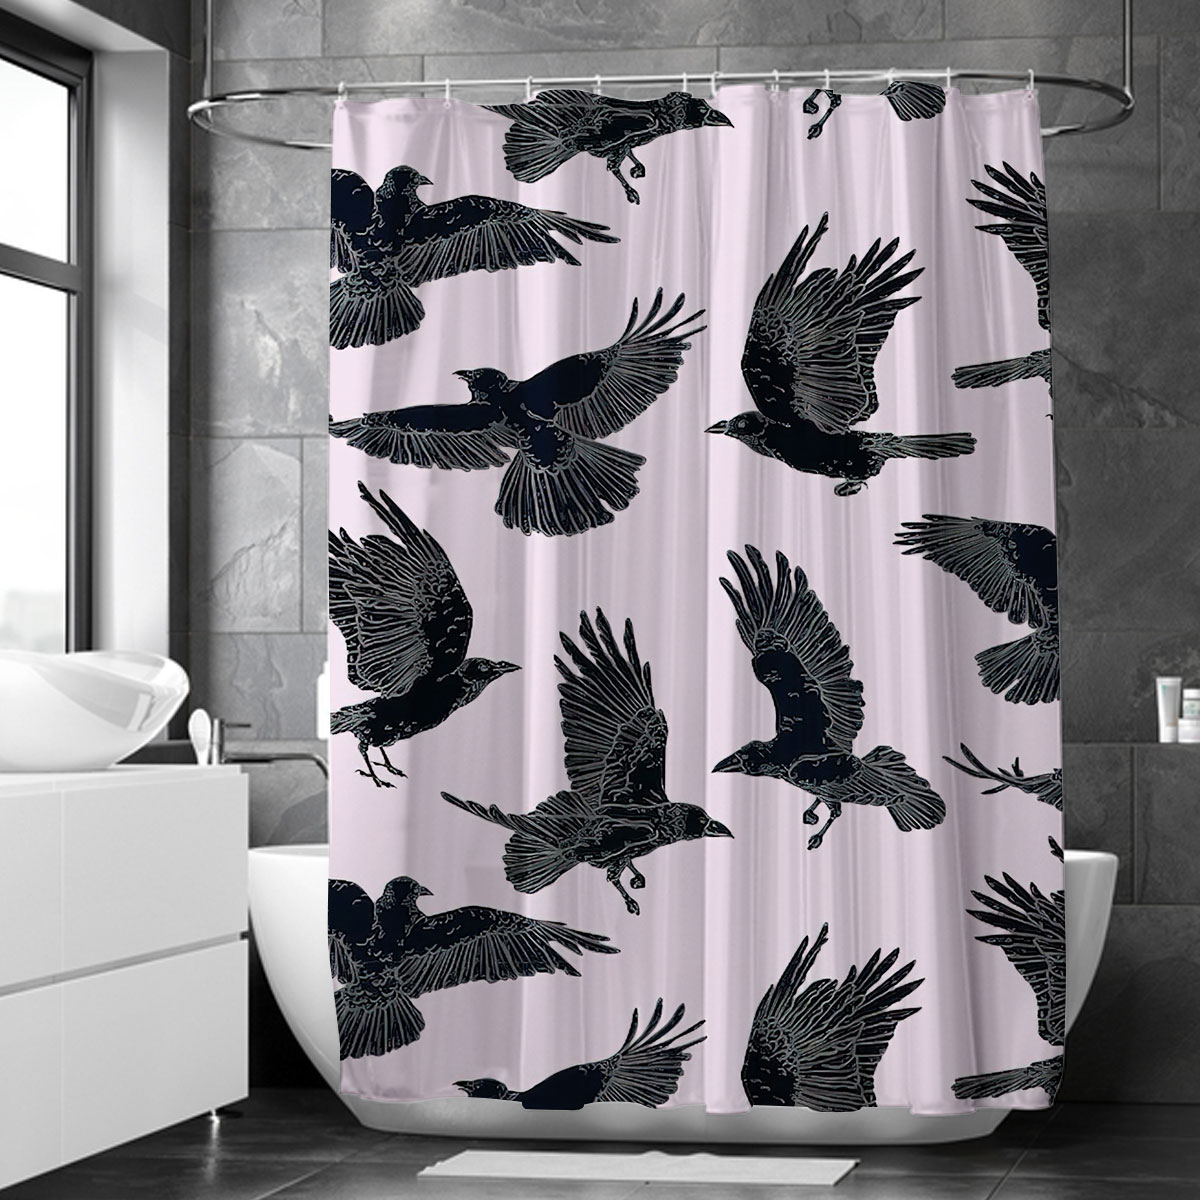 Flying Raven Art Shower Curtain